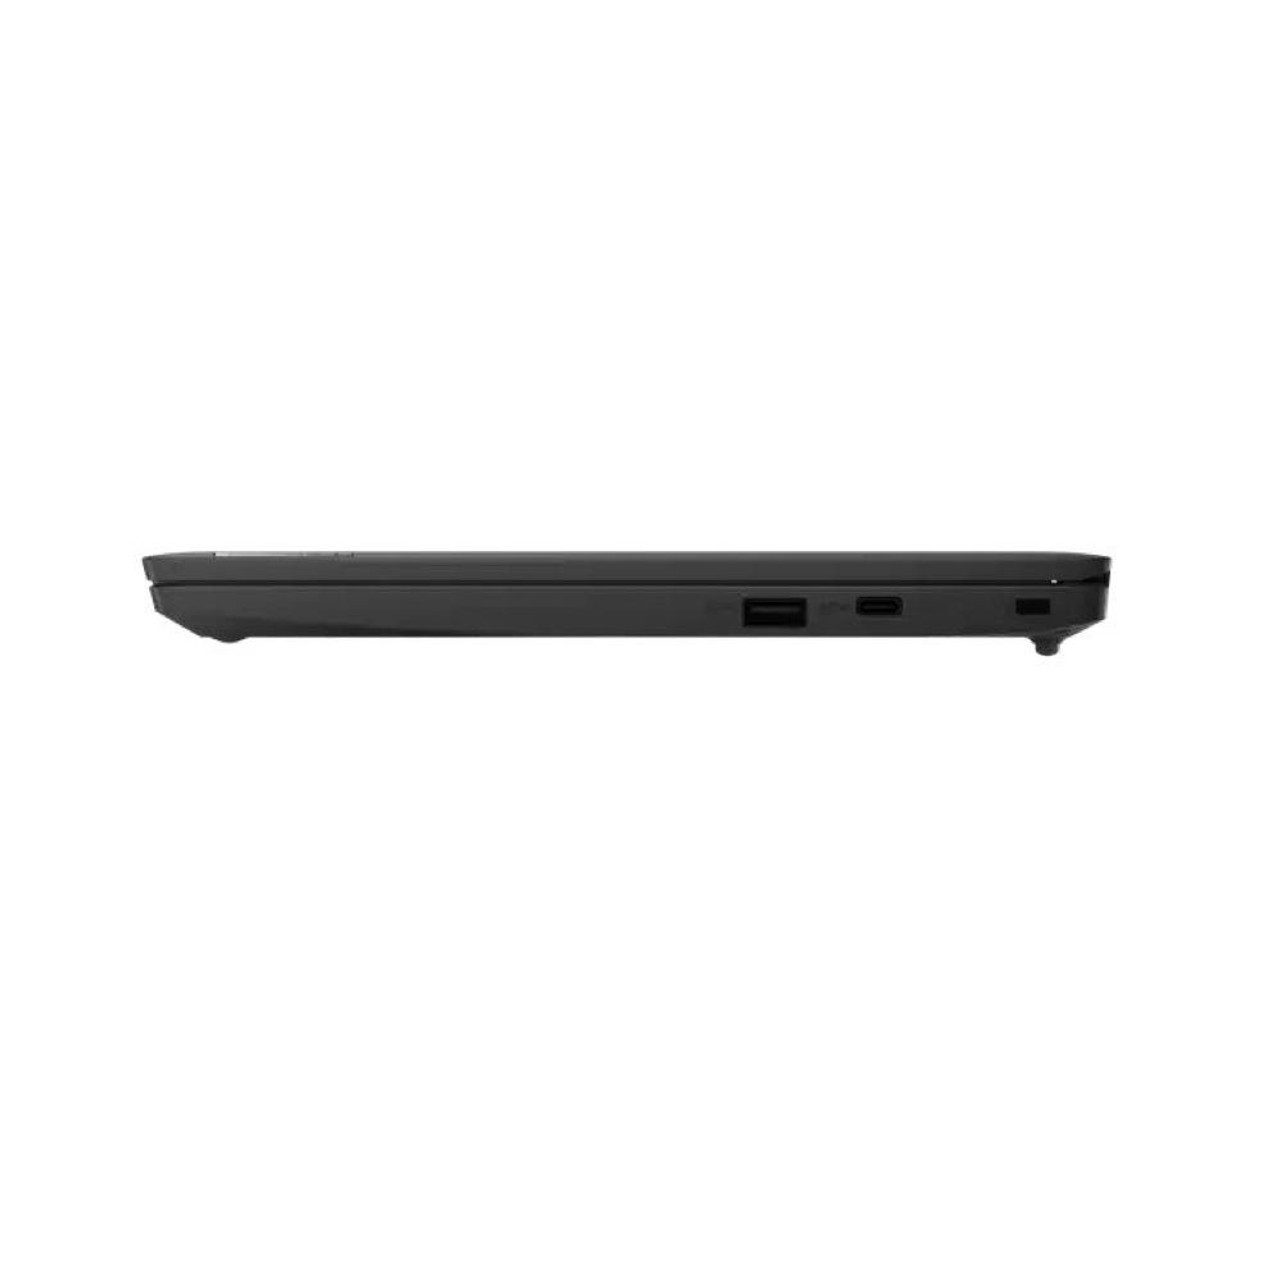 Lenovo IdeaPad 3 Chromebook 11.6" Intel Celeron N4020 4GB Ram 32GB eMMC Chrome OS | Scratch & Dent